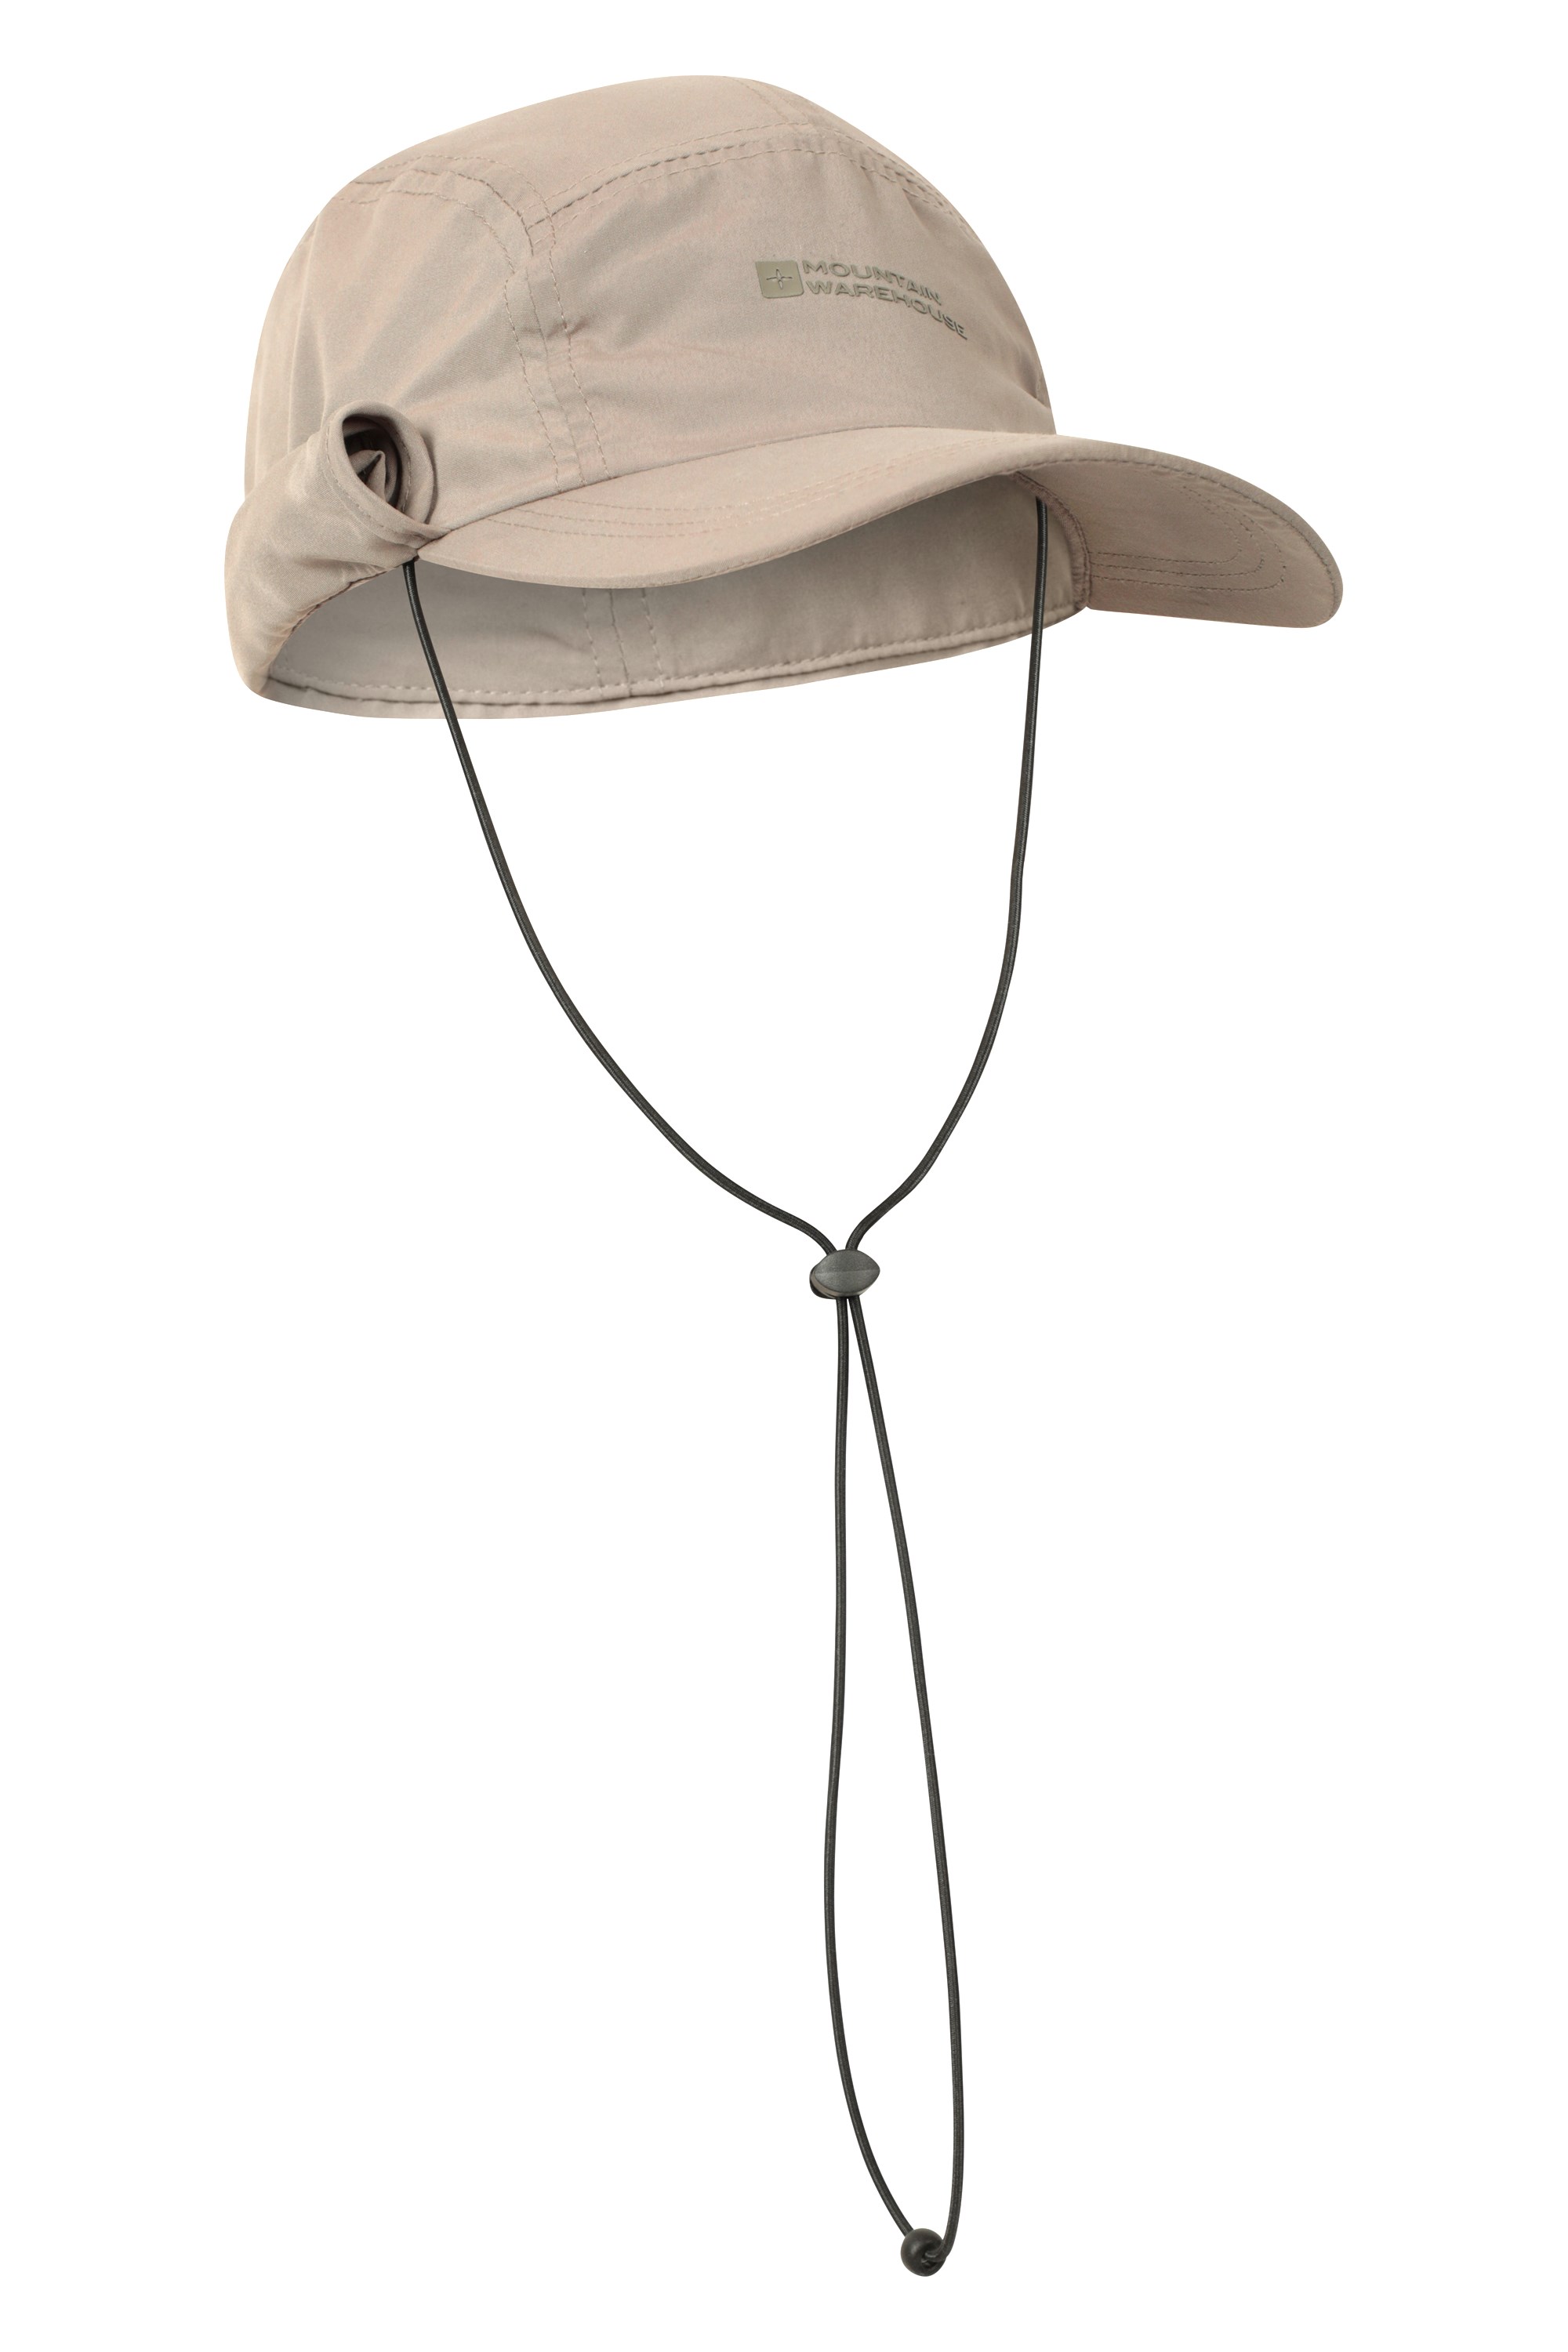 Mountain Warehouse Sombrero de pescador para hombre, gorra de verano  transpirable